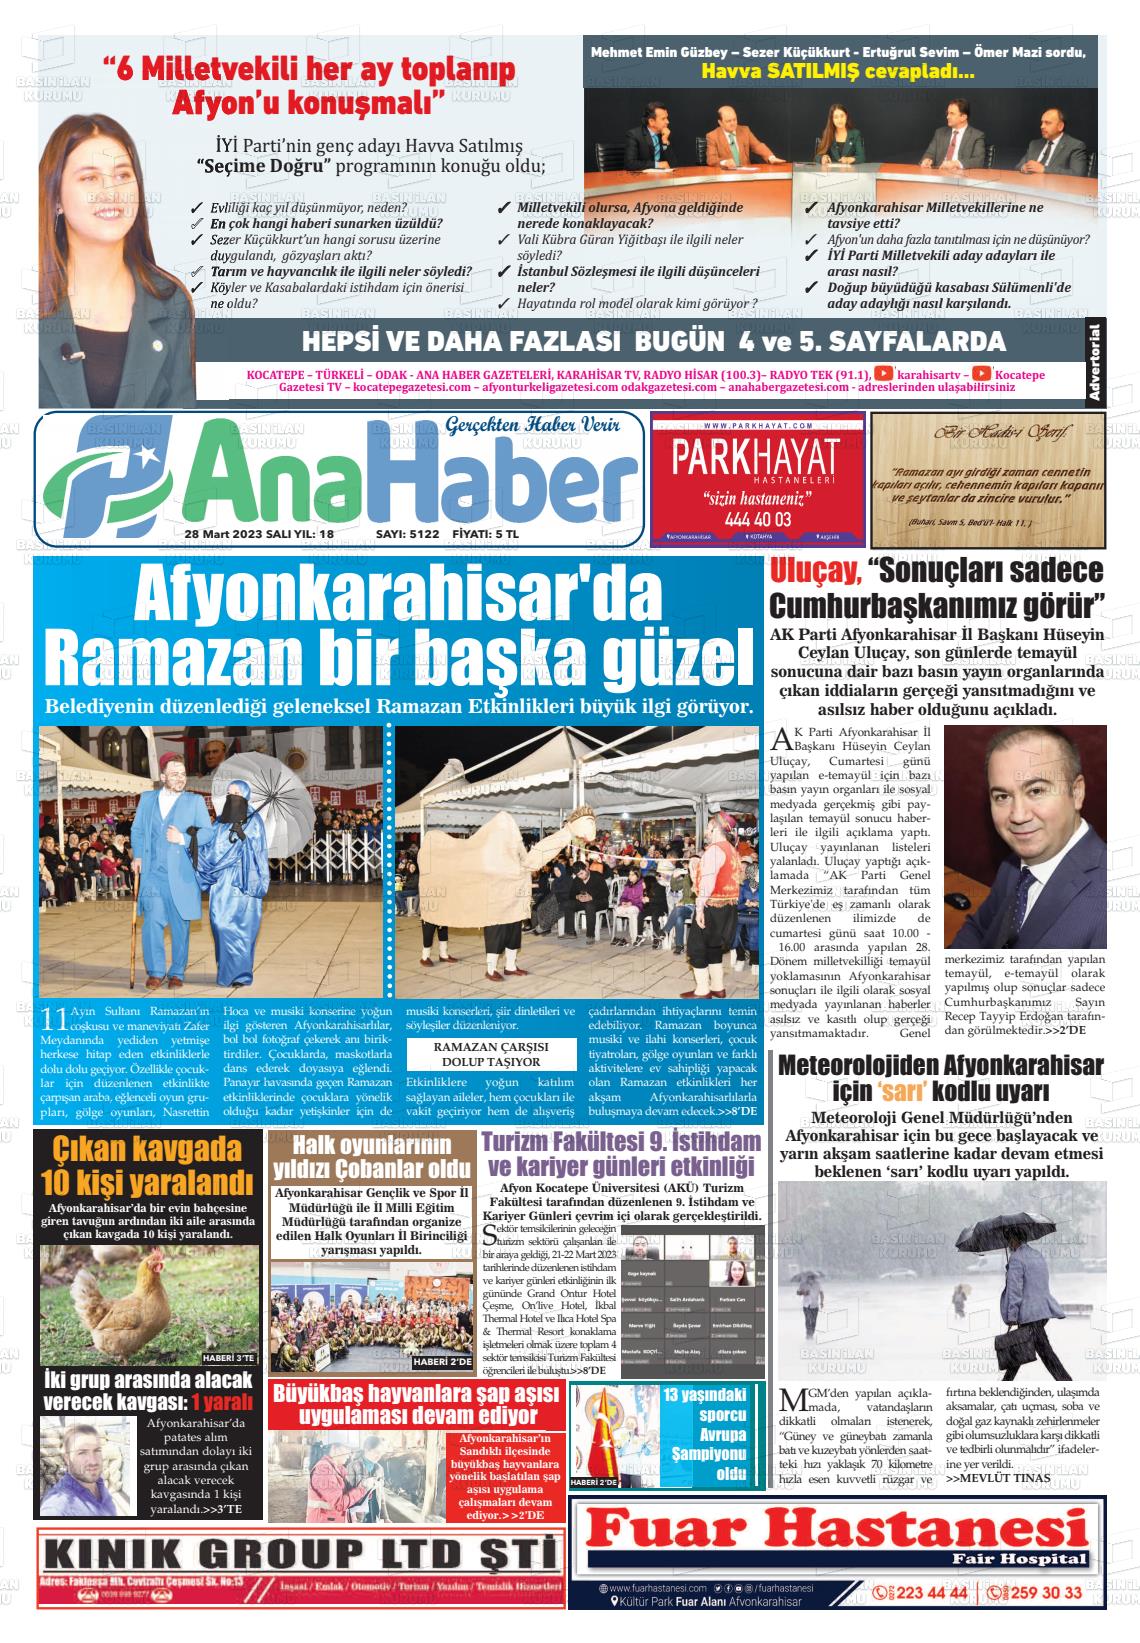 28 Mart 2023 Anahaber Gazete Manşeti